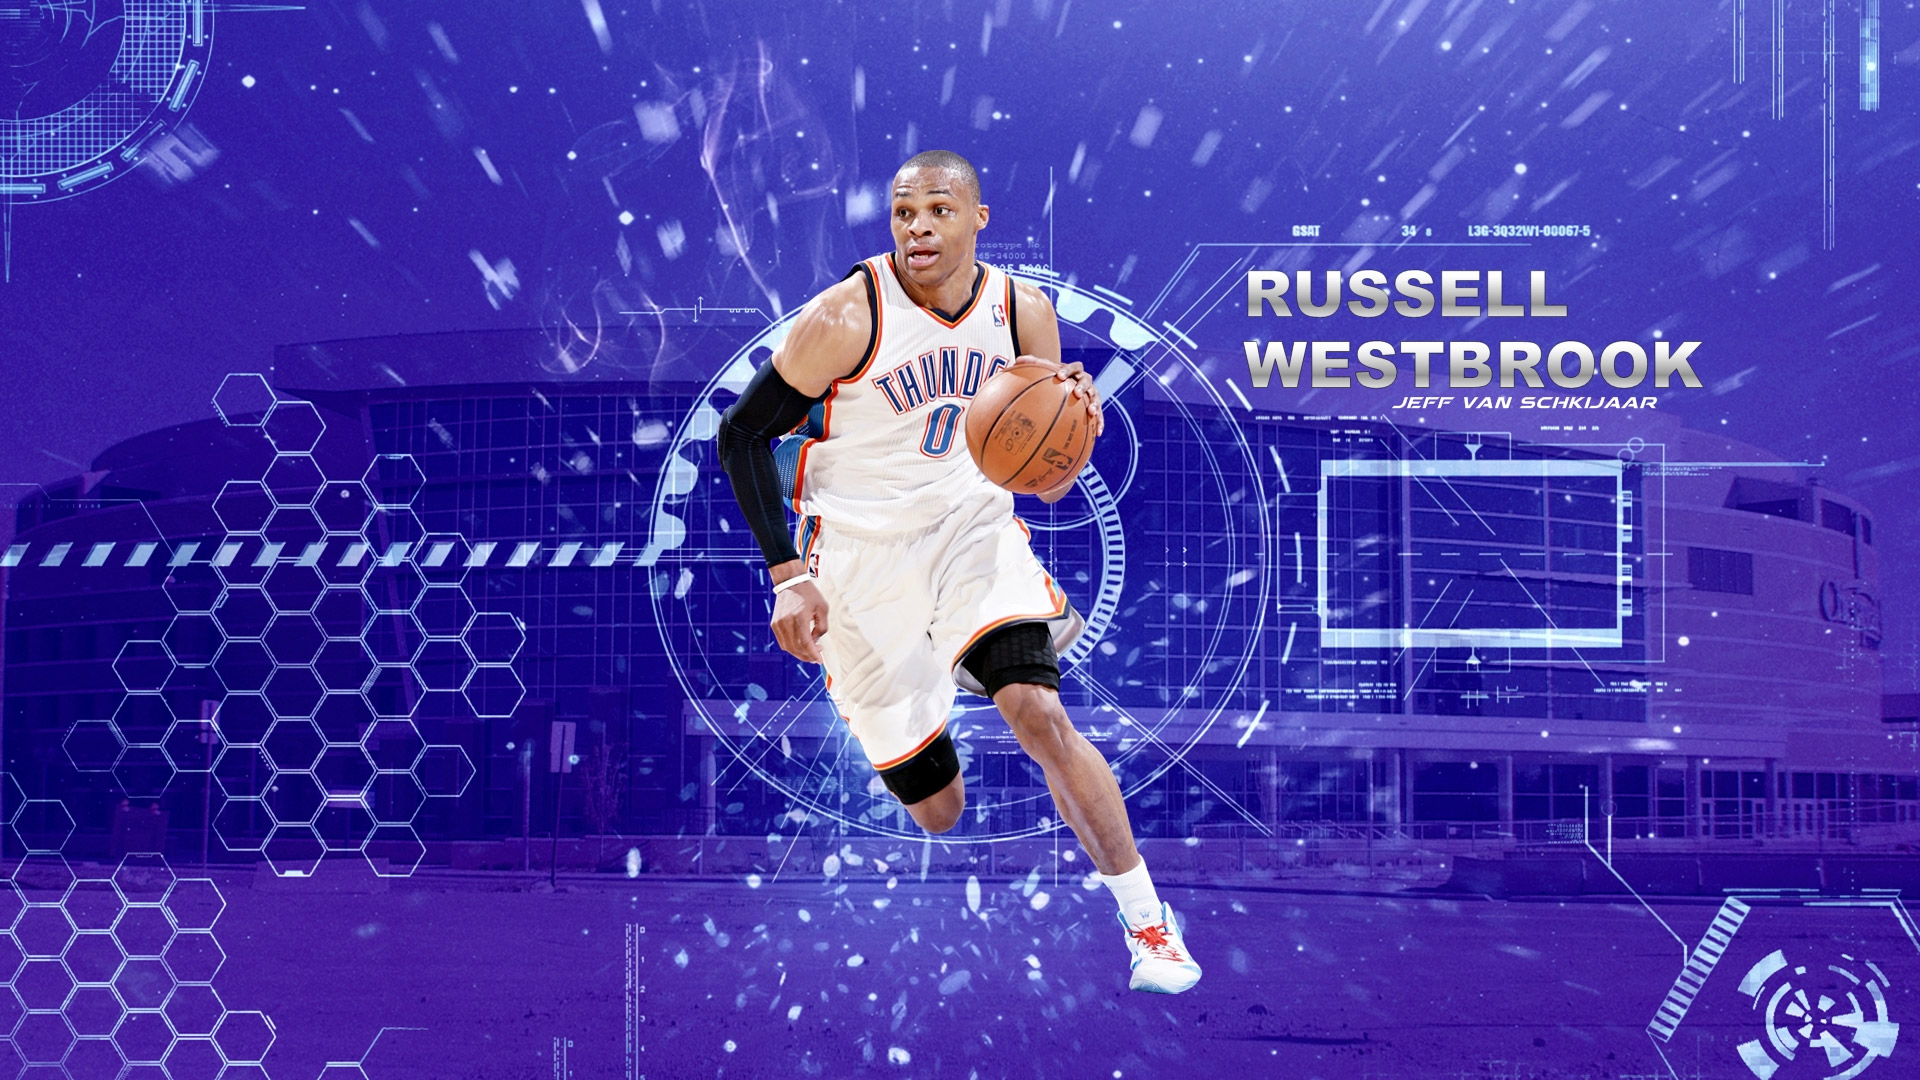 russell westbrook wallpaper,basketball player,player,basketball moves,basketball,ball game